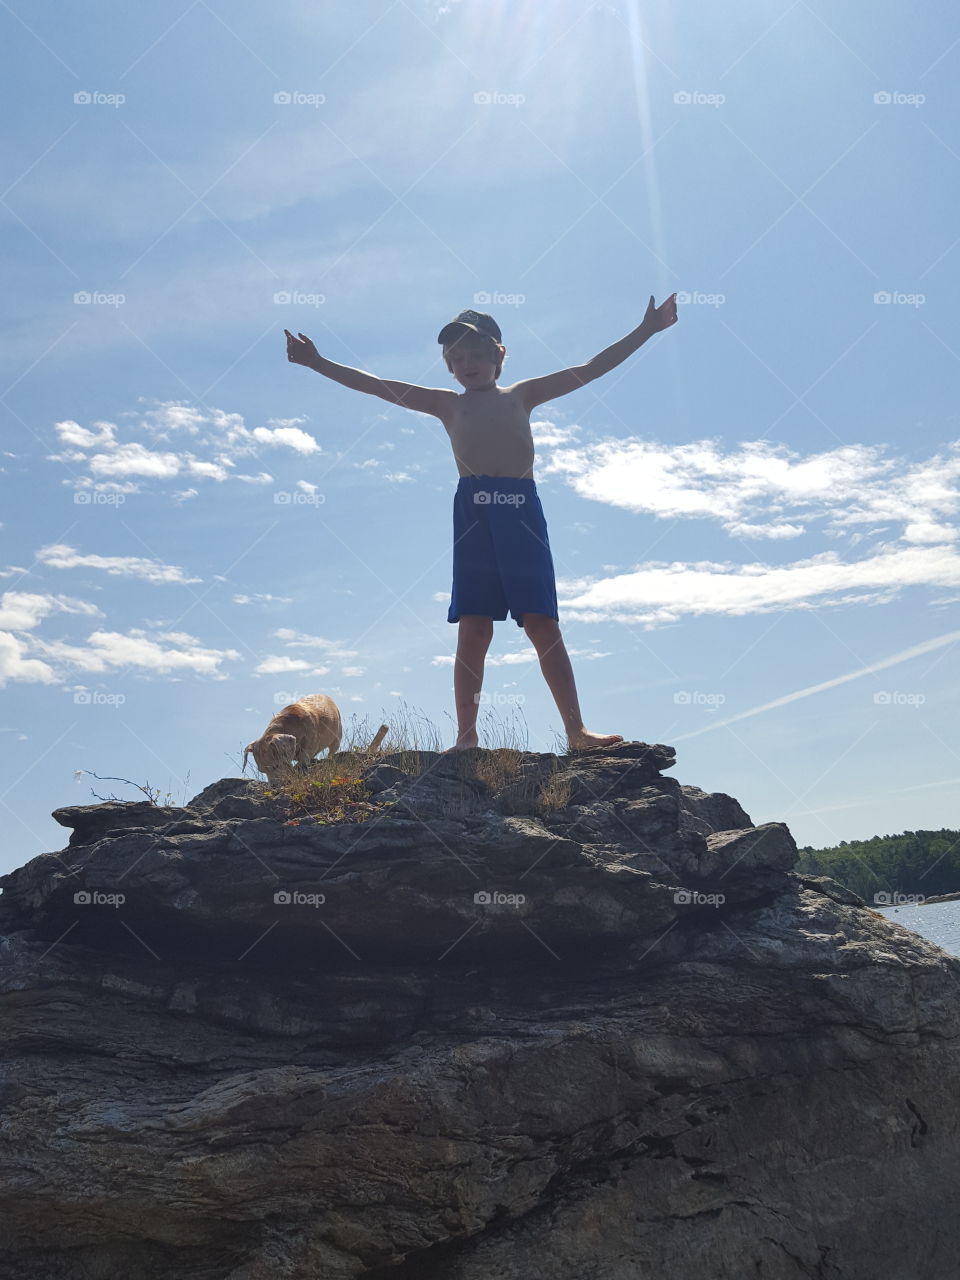 Boy on top of Rocks